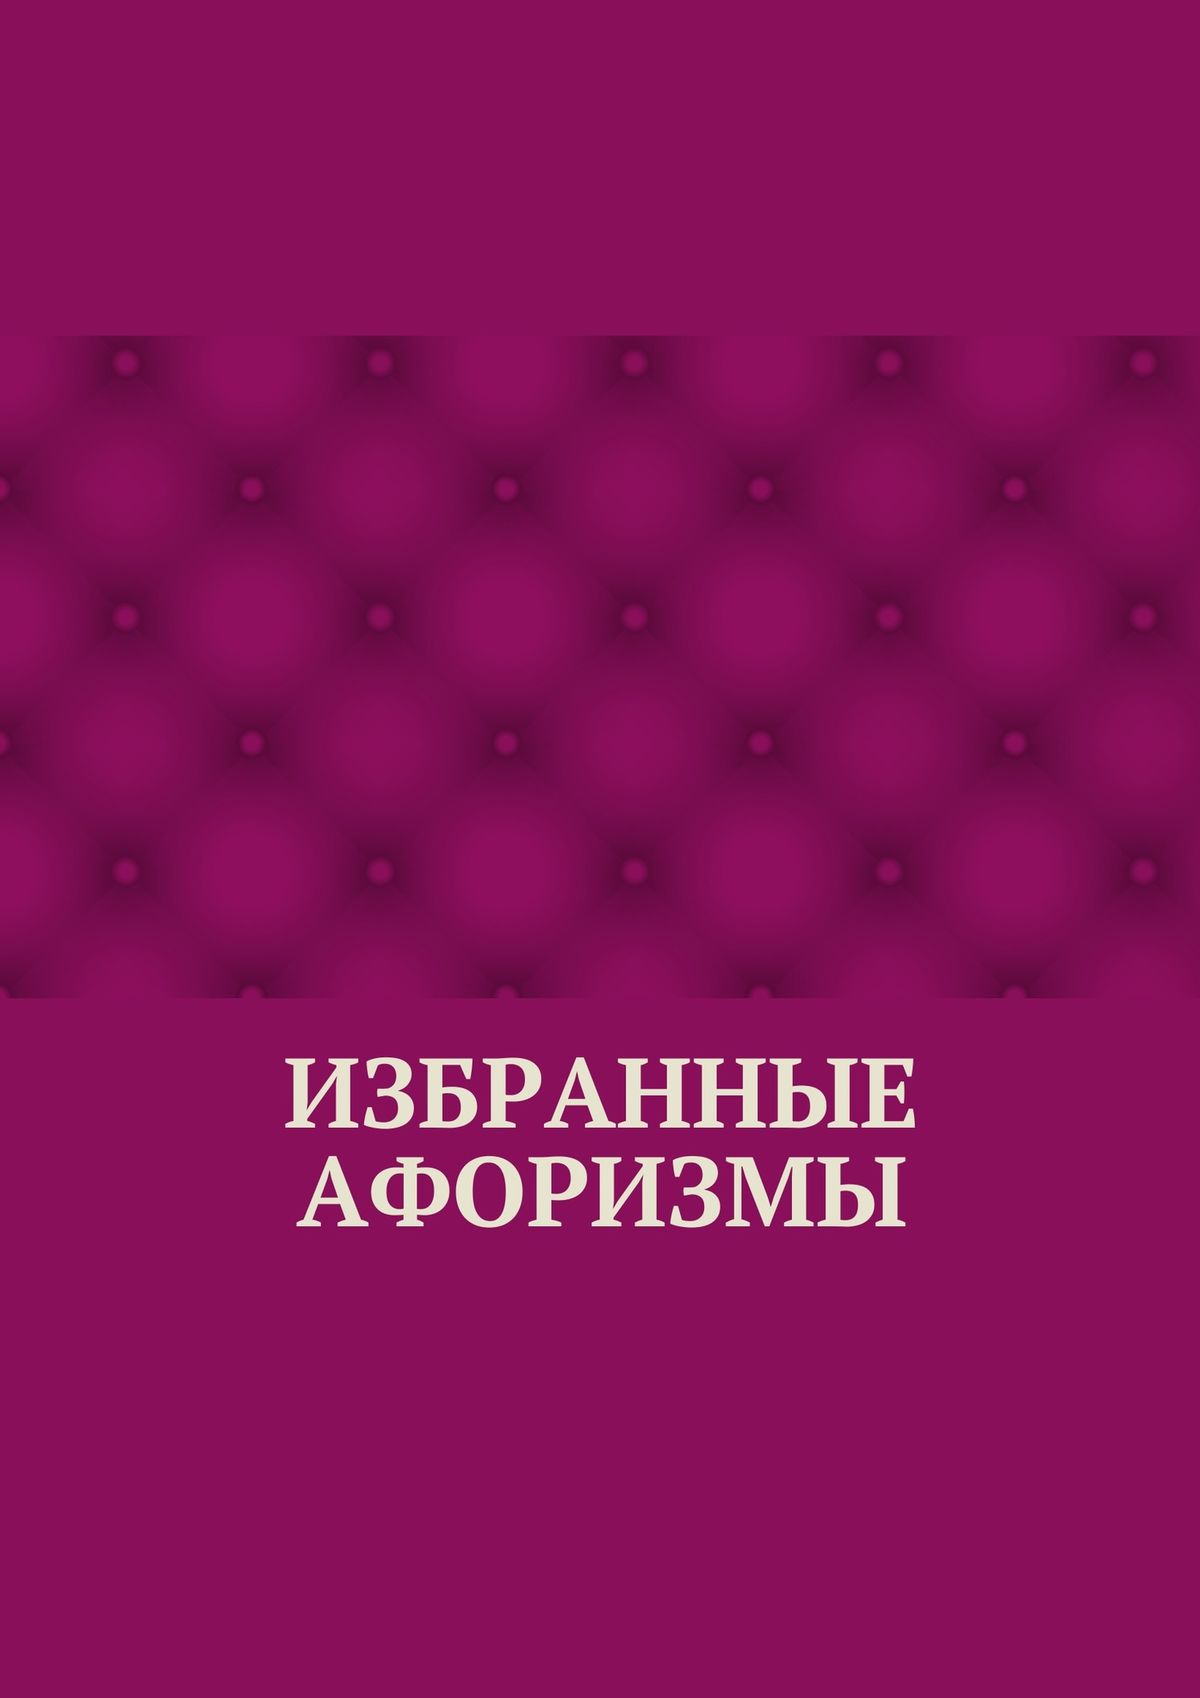 Книга Избранные афоризмы из серии , созданная Абзал Кумаров, может относится к жанру Афоризмы и цитаты. Стоимость электронной книги Избранные афоризмы с идентификатором 21579351 составляет 400.00 руб.